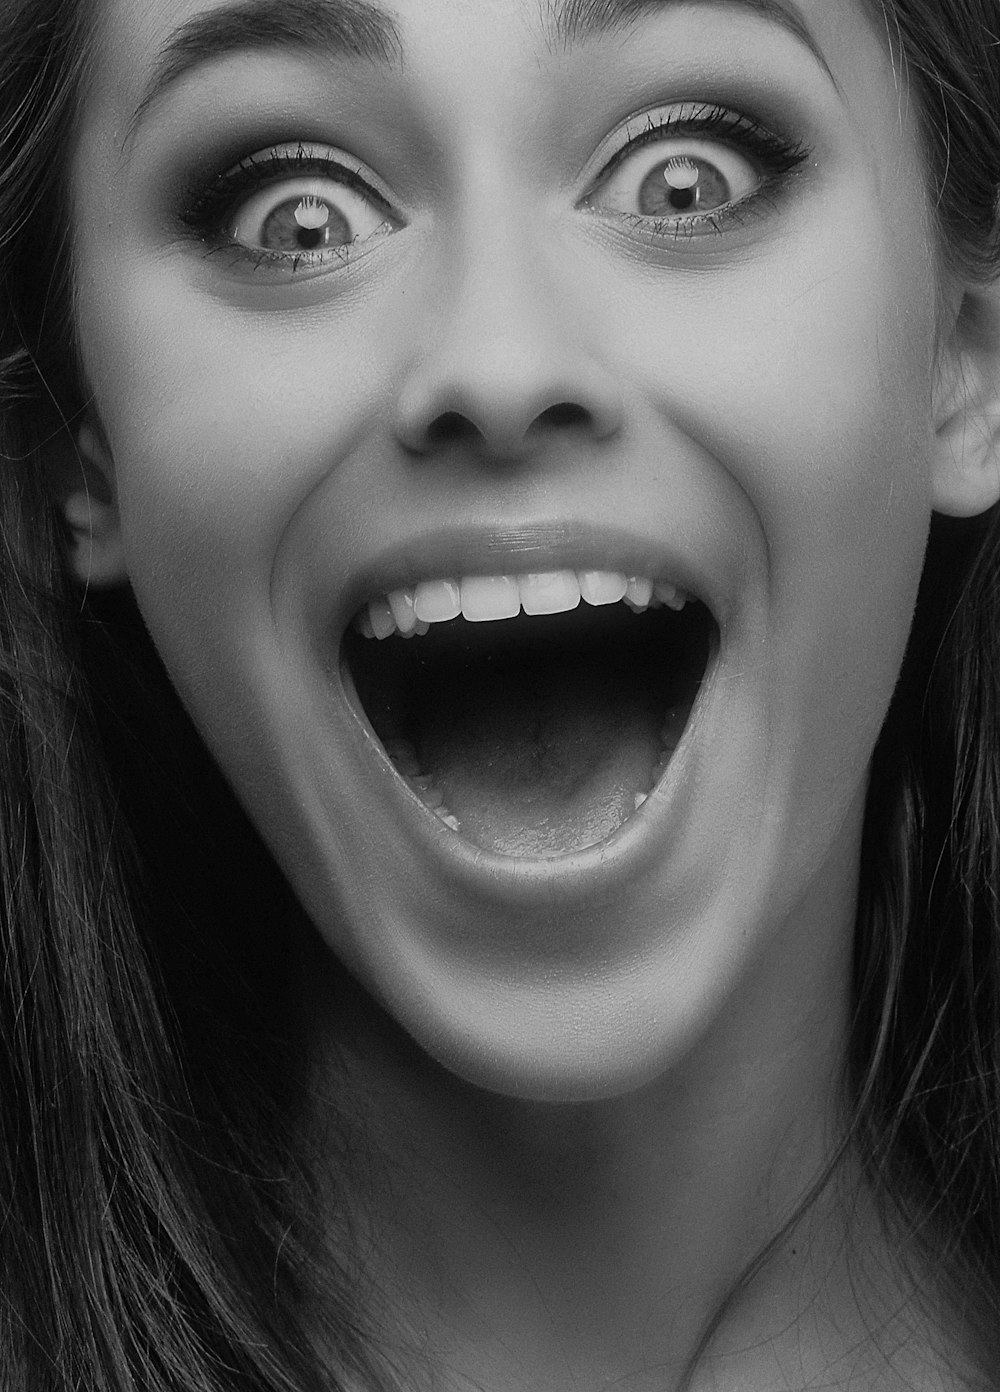 Foto in scala di grigi della bocca aperta della donna